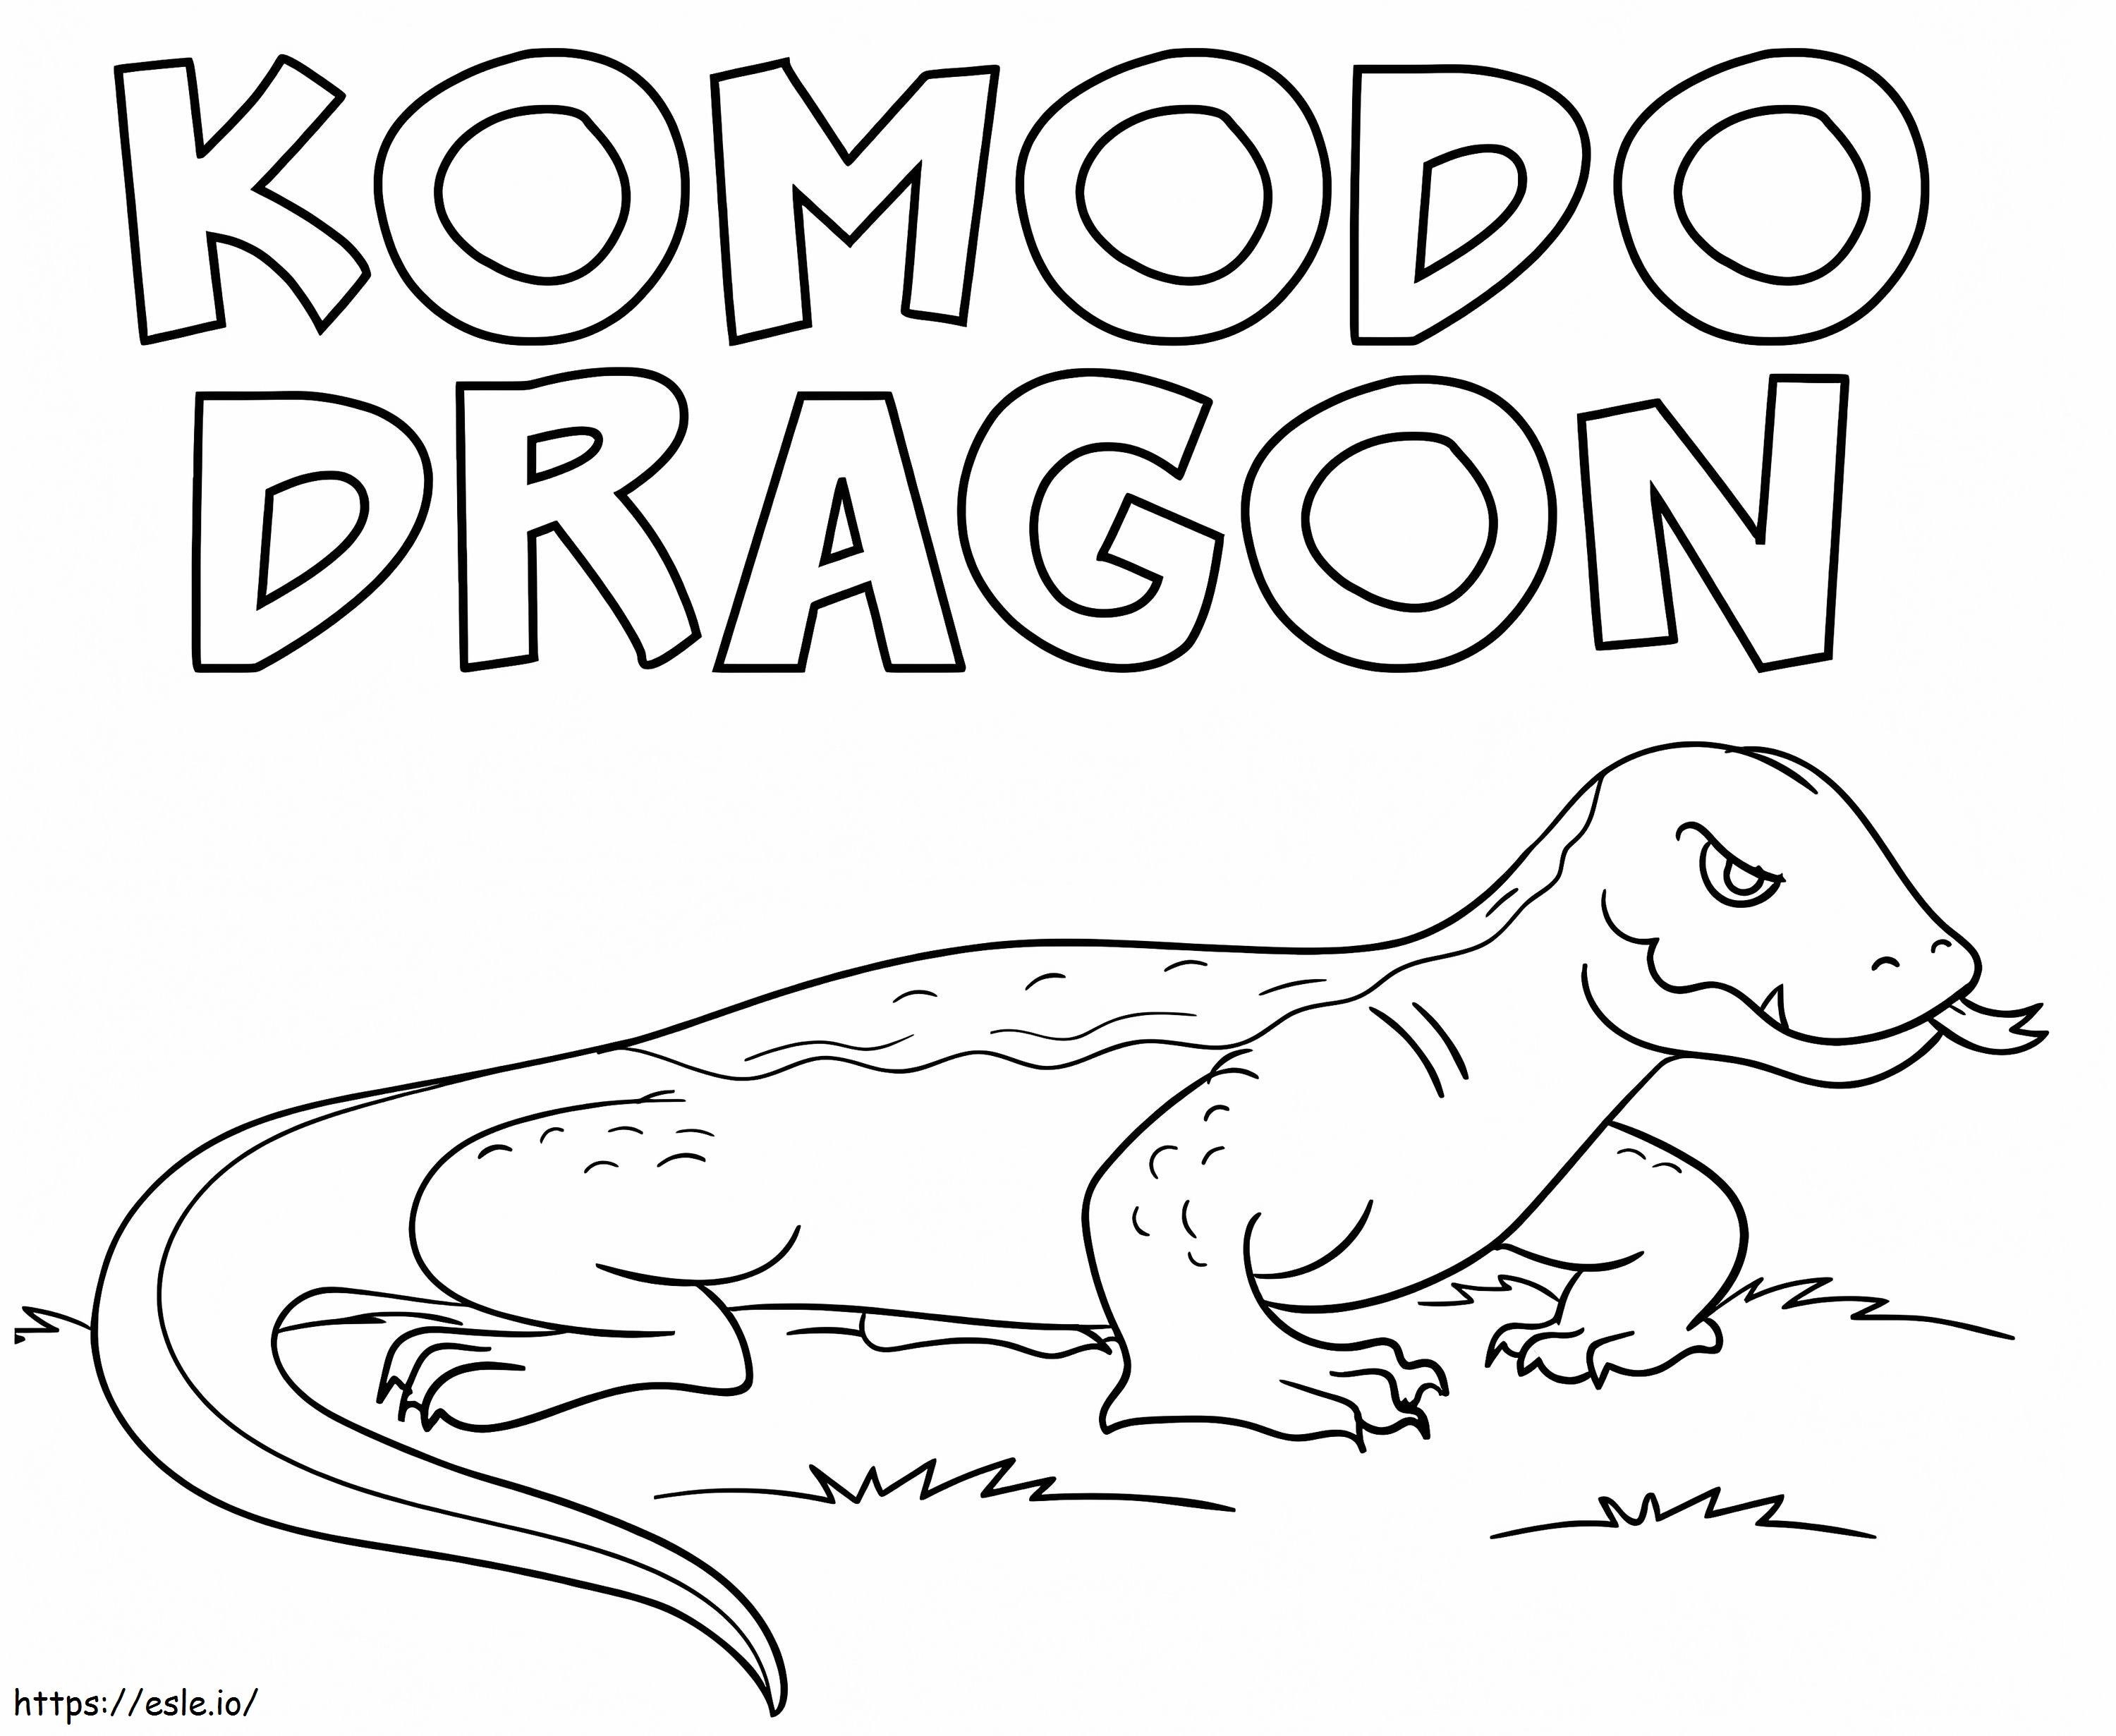 Komodo Dragon 4 coloring page